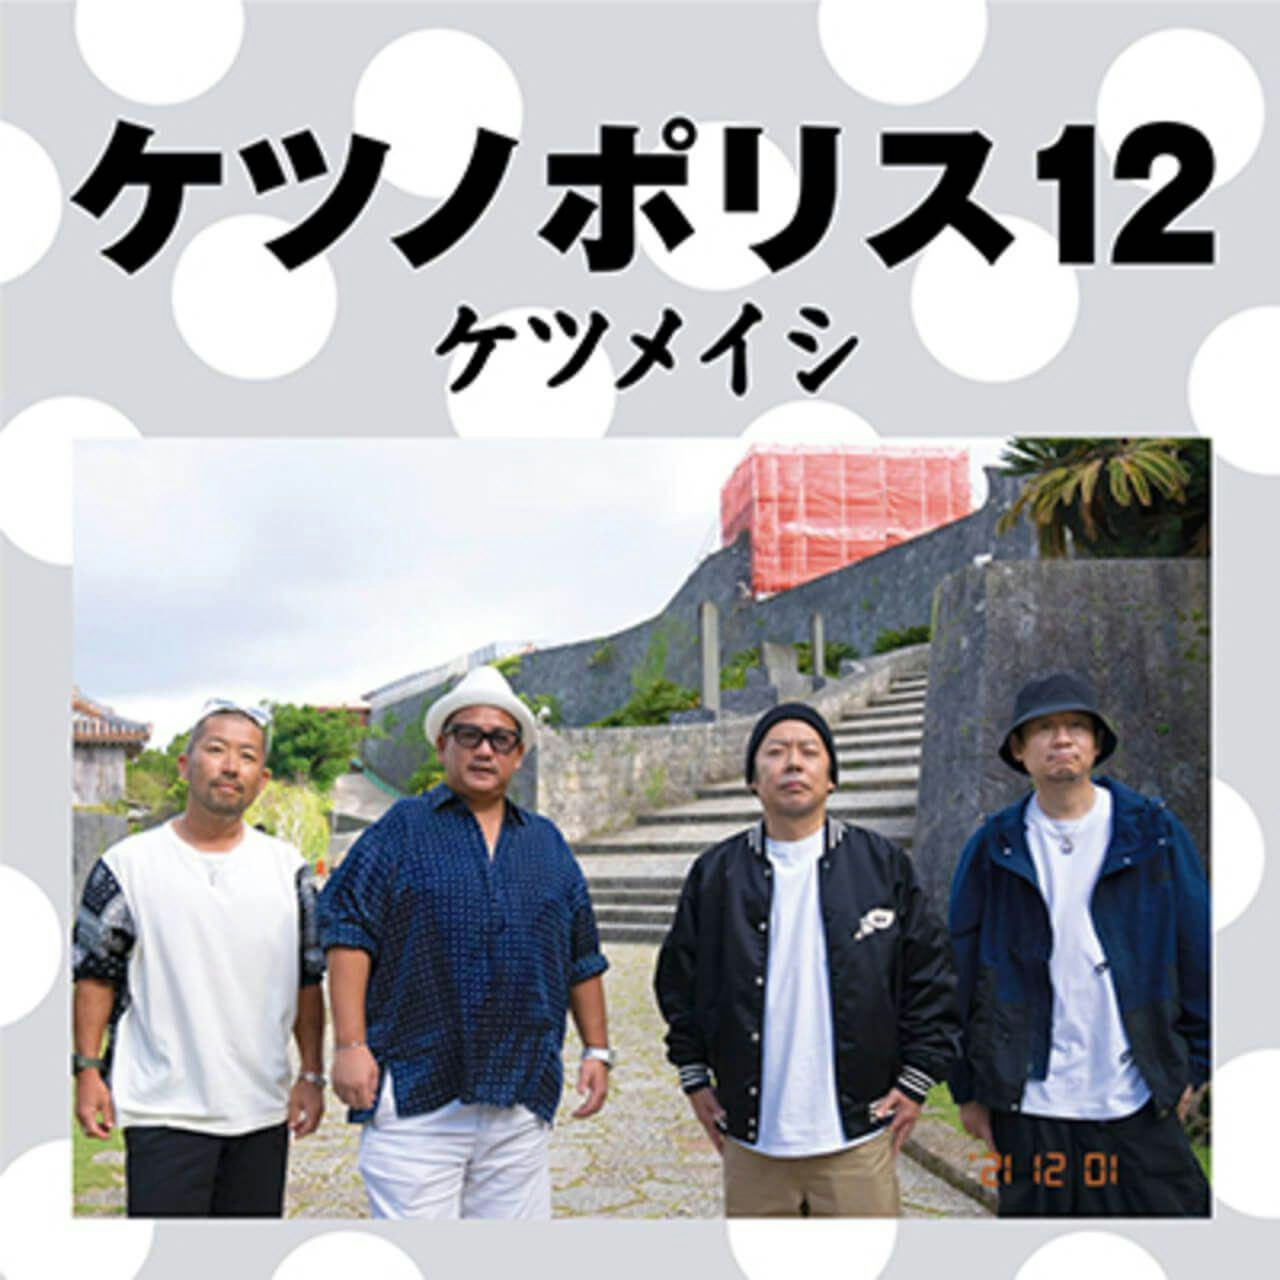 ケツメイシ  ケツノポリス  1〜11 CD 11枚セット アルバム